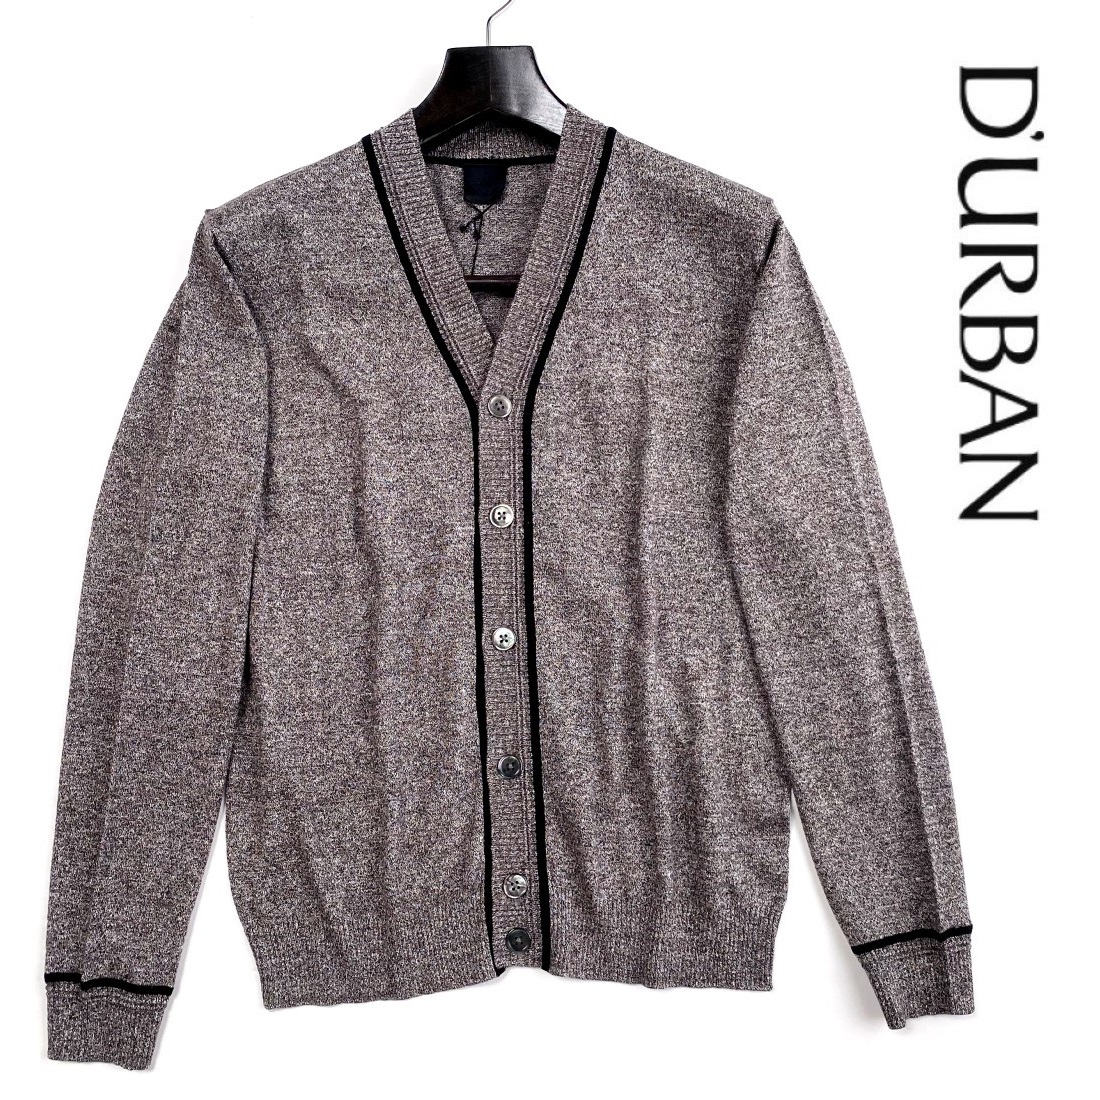 喜ばれる誕生日プレゼント ジャケットのインナーにもオススメの一枚 69%OFF D'URBAN ダーバン 天竺編みニットカーディガン貝釦 シェル釦リネン混コットン素材ブラウン系